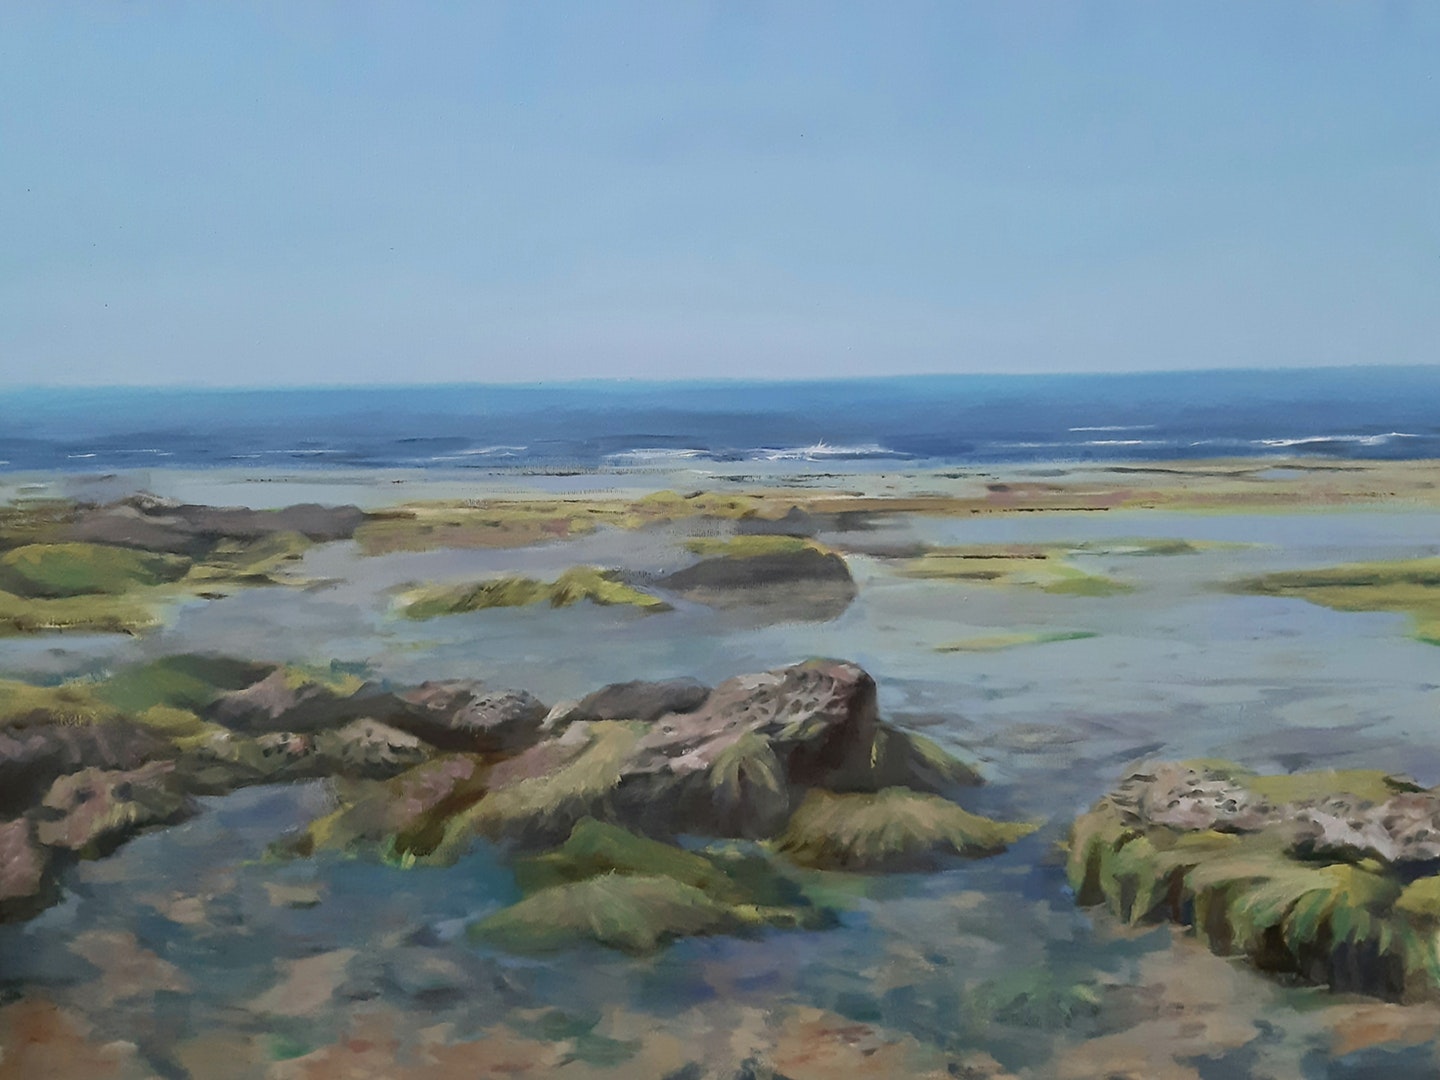 'Poleg Beach', Shay Avivi, Oil on canvas, 60 x 80 cm